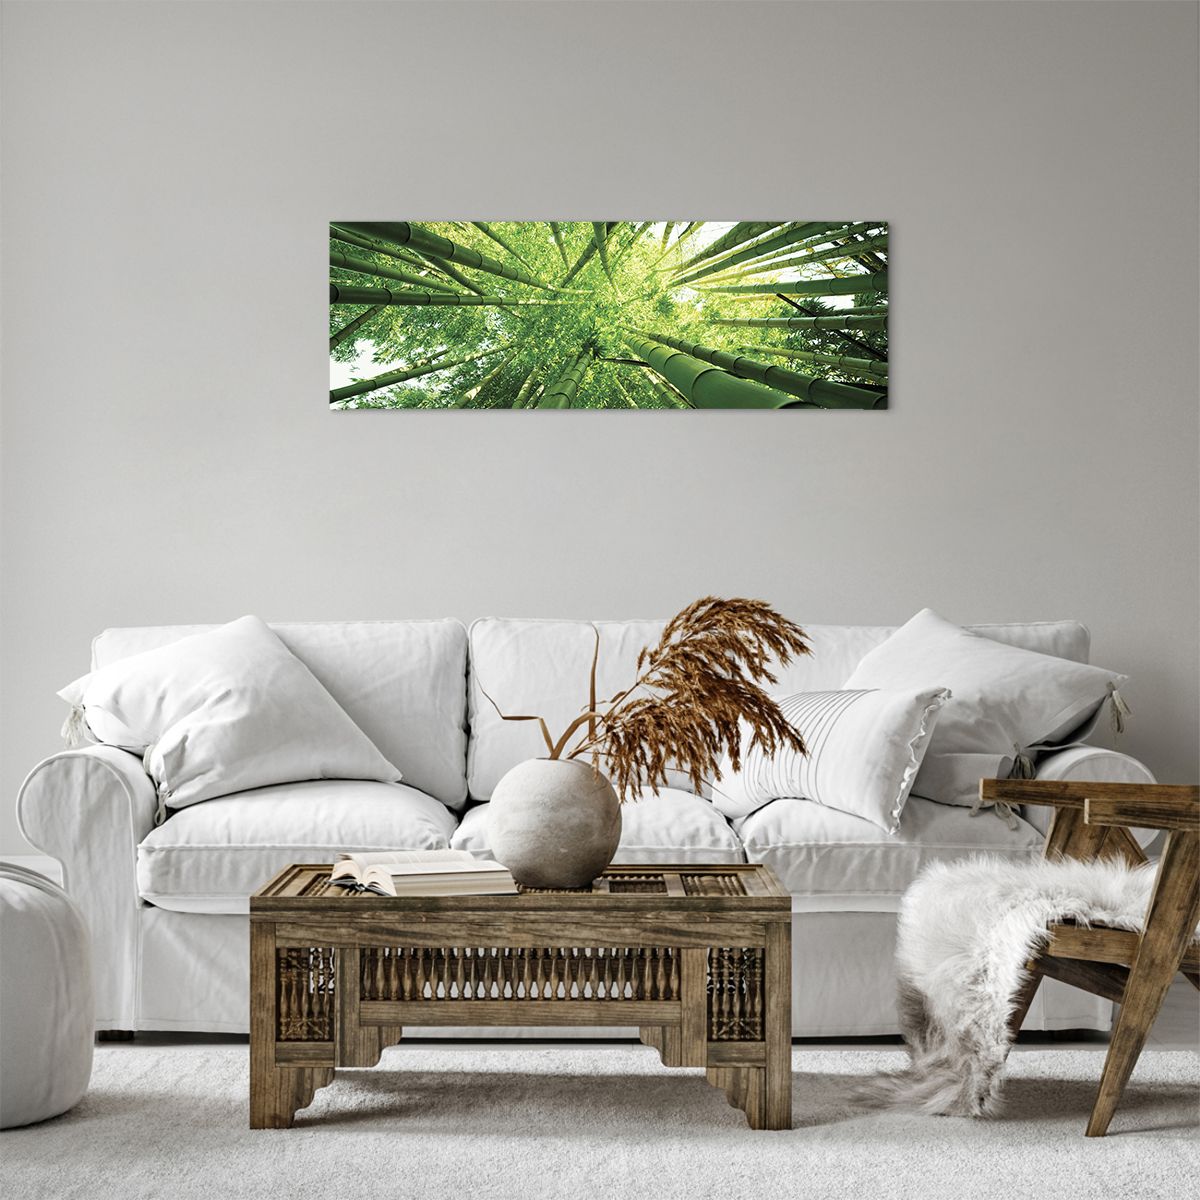 Obrazy na płótnie Las Bambusowy, Obrazy na płótnie Dżungla, Obrazy na płótnie Bambus, Obrazy na płótnie Natura, Obrazy na płótnie Japonia